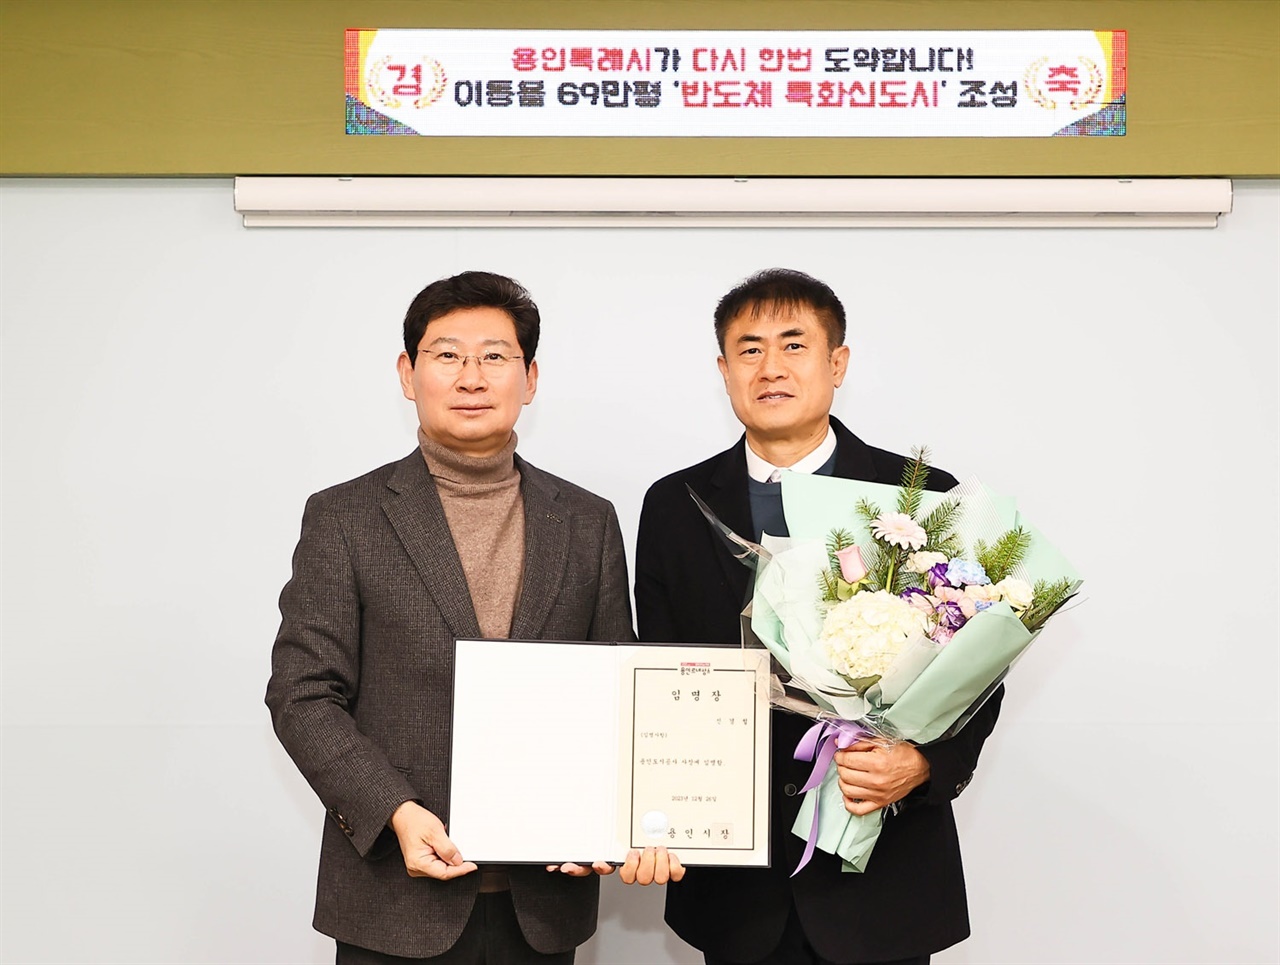 용인도시공사 제11대 신경철 사장 취임식이 26일 열렸다.